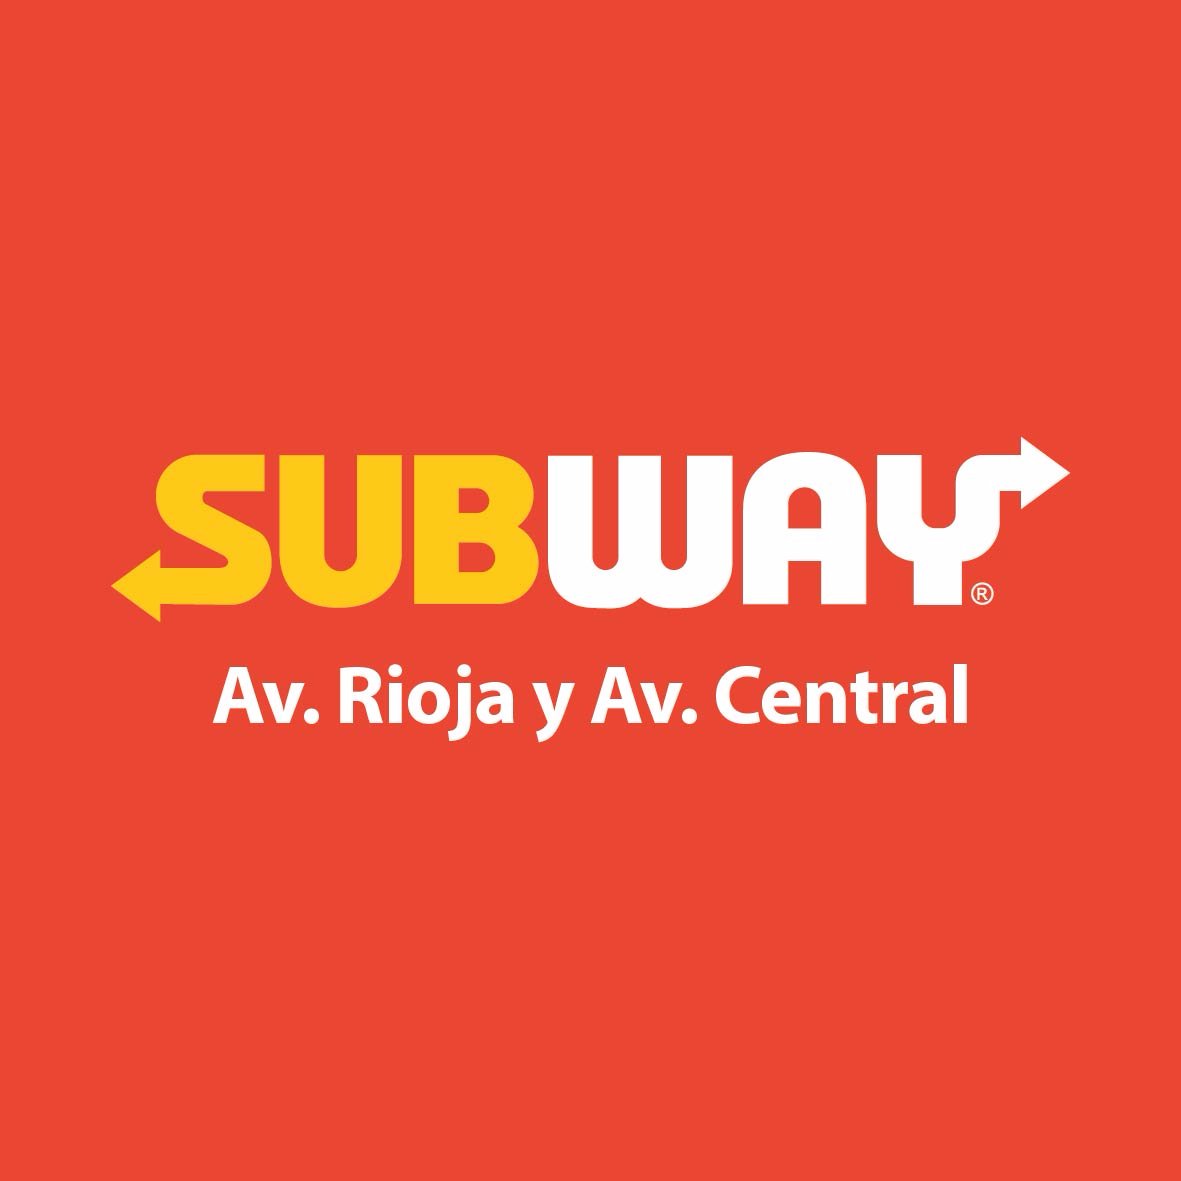 SUBWAY® es la cadena de comida rápida más grande del mundo con más de 45.000 locales en 112 países.